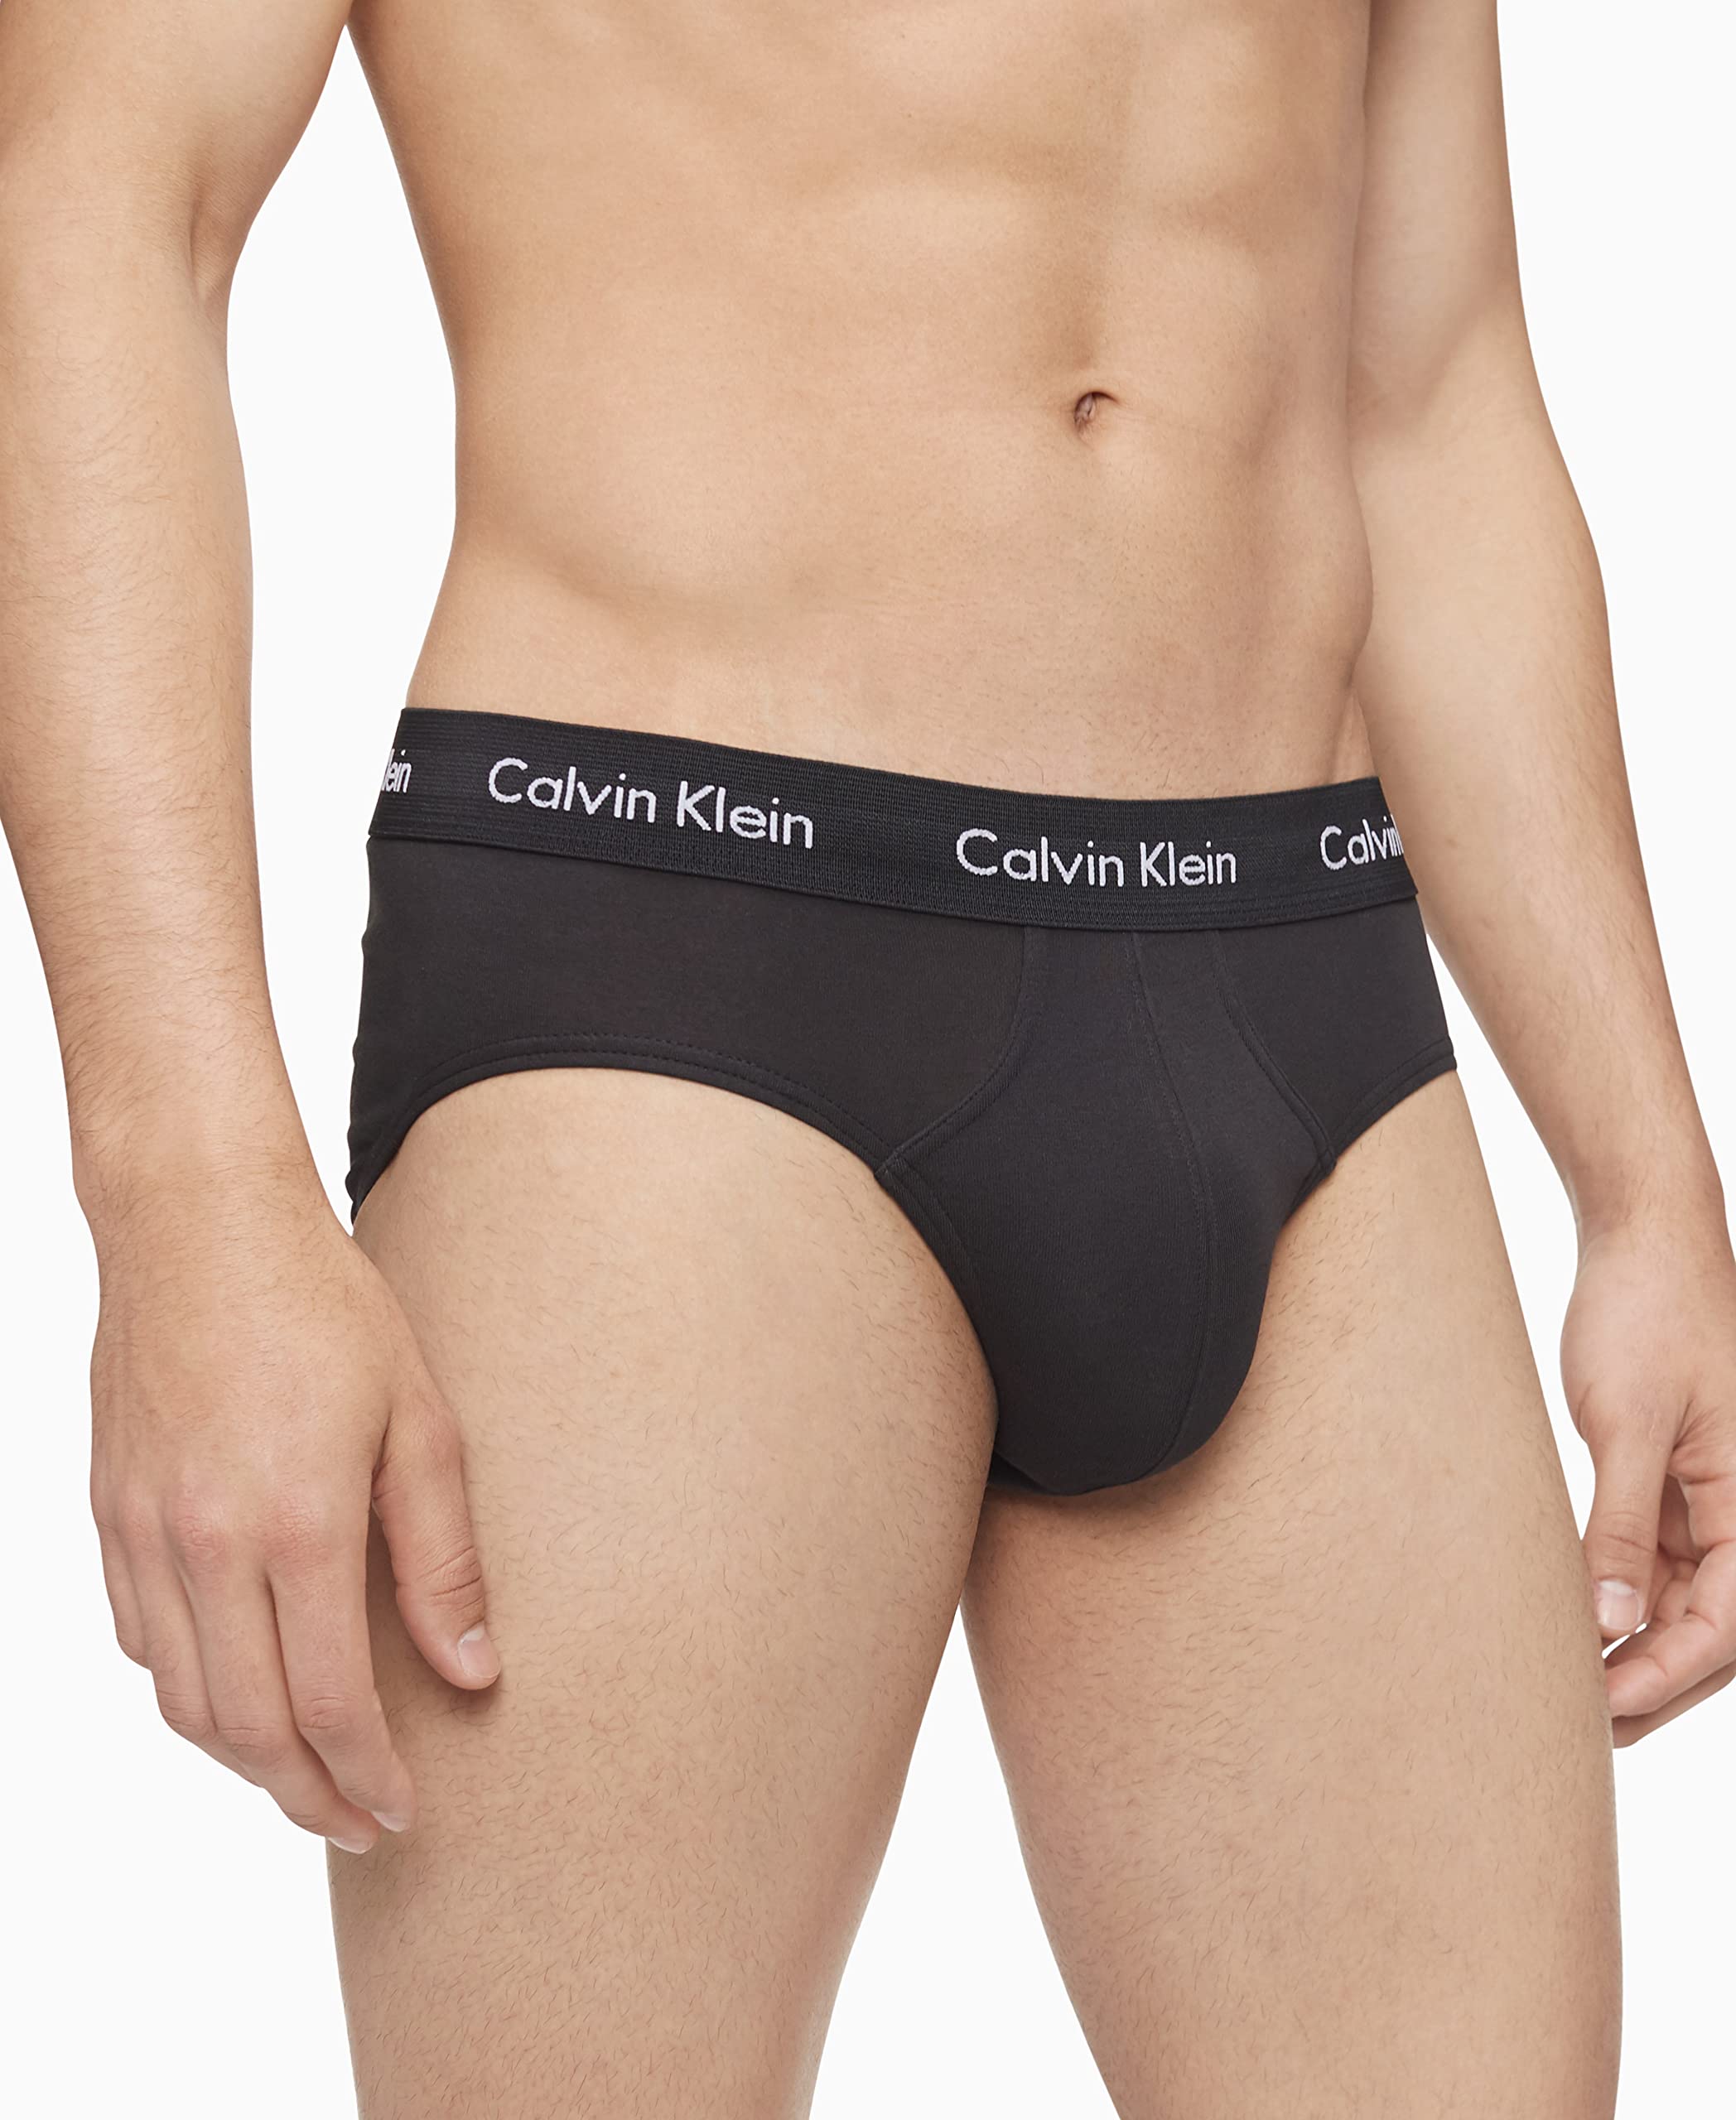 Calvin Klein Men's Cotton Stretch 3-Pack Brief